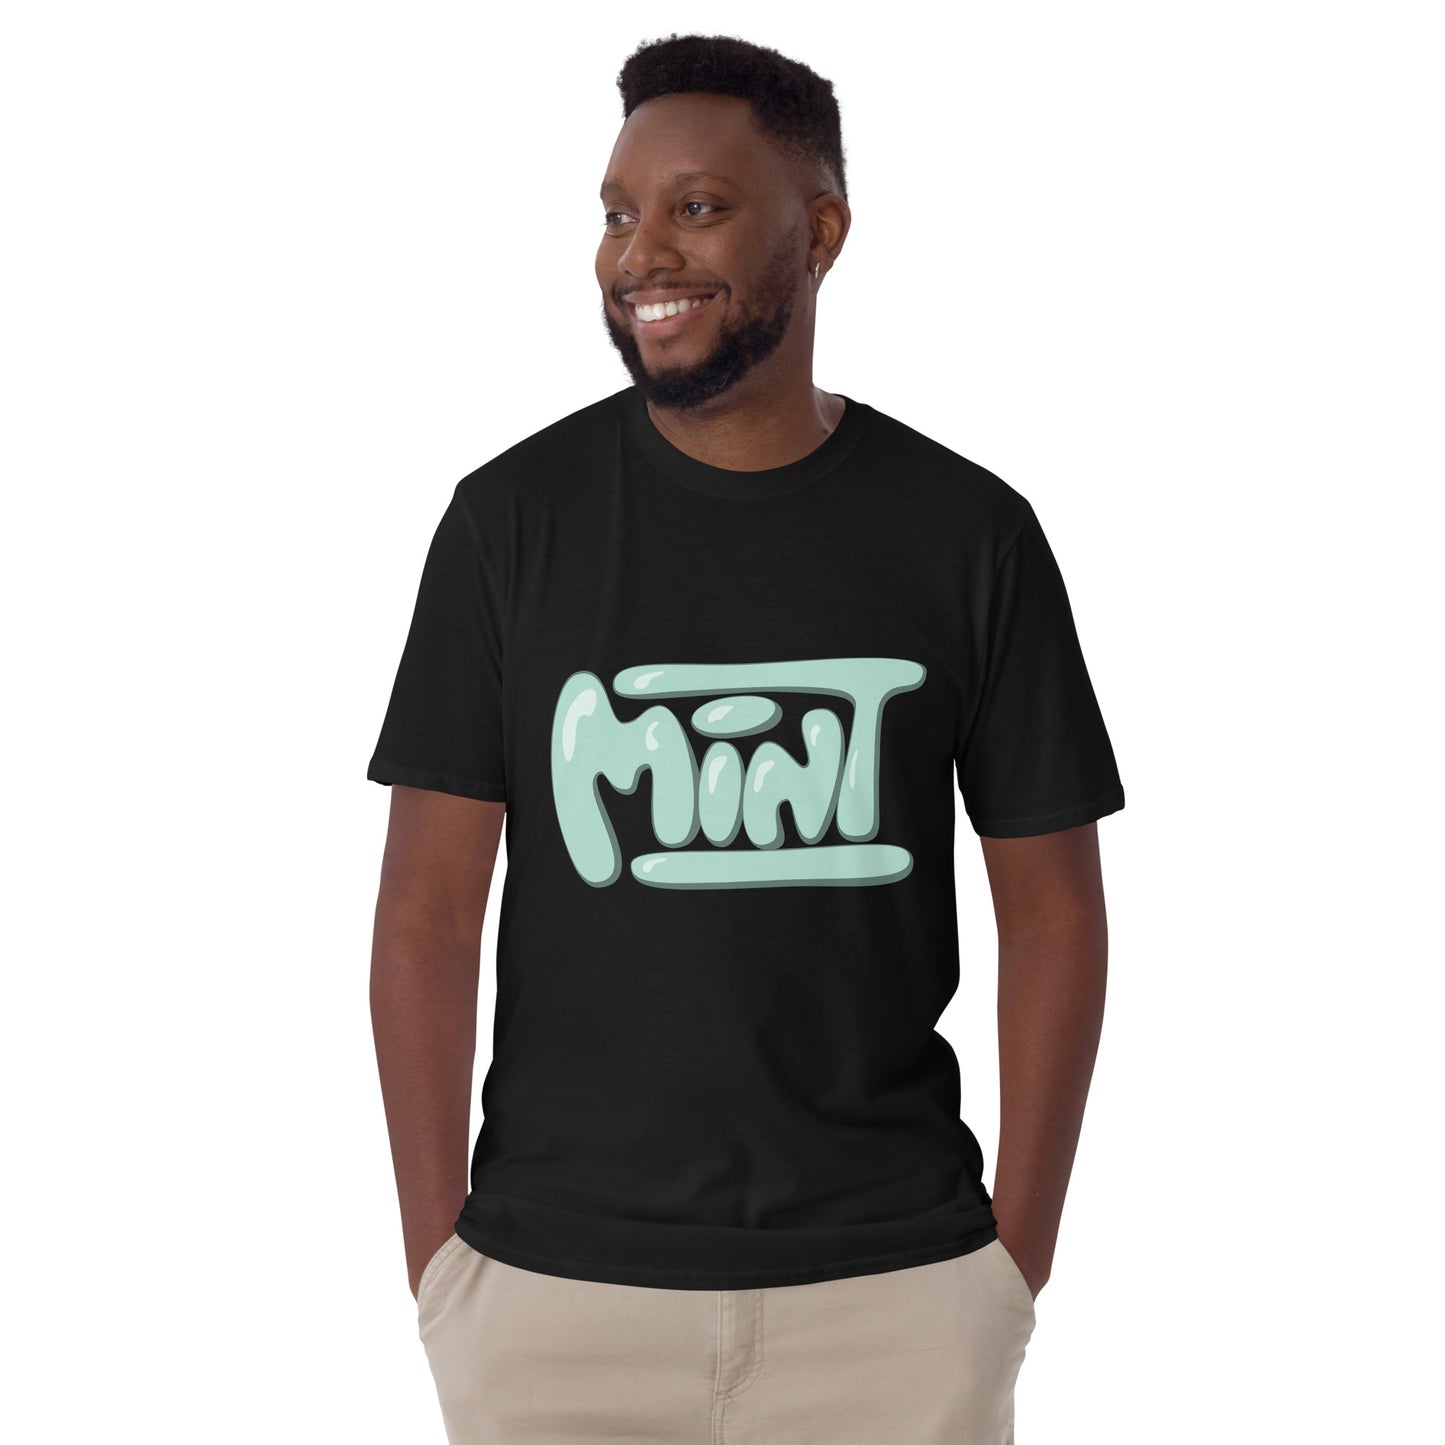 Mint T-shirt